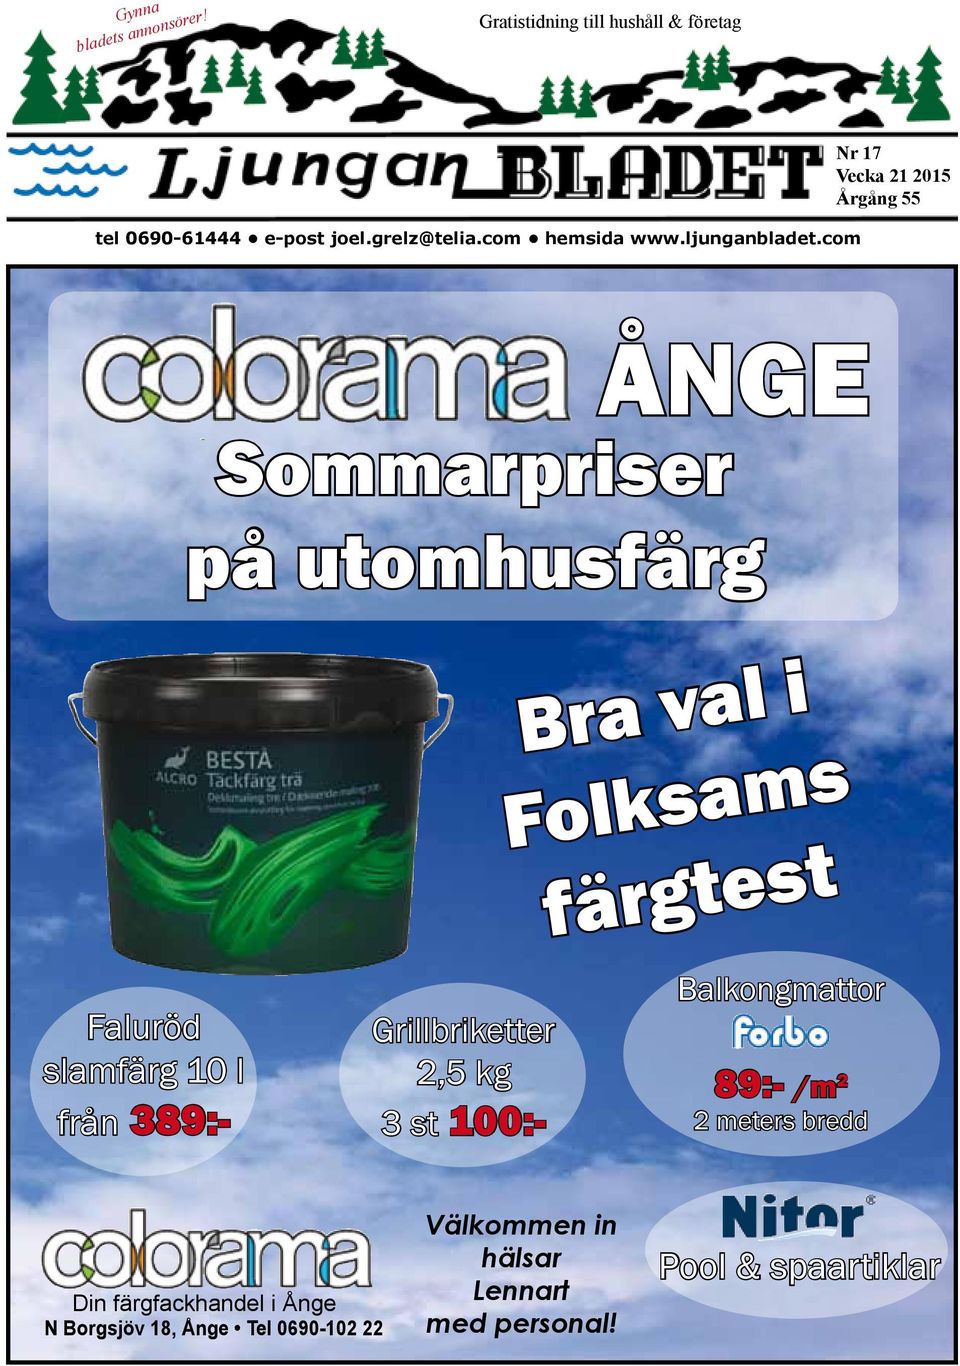 com Nr 17 Vecka 21 2015 Årgång 55 ÅNGE Sommarpriser på utomhusfärg Faluröd slamfärg 10 l från 389:-